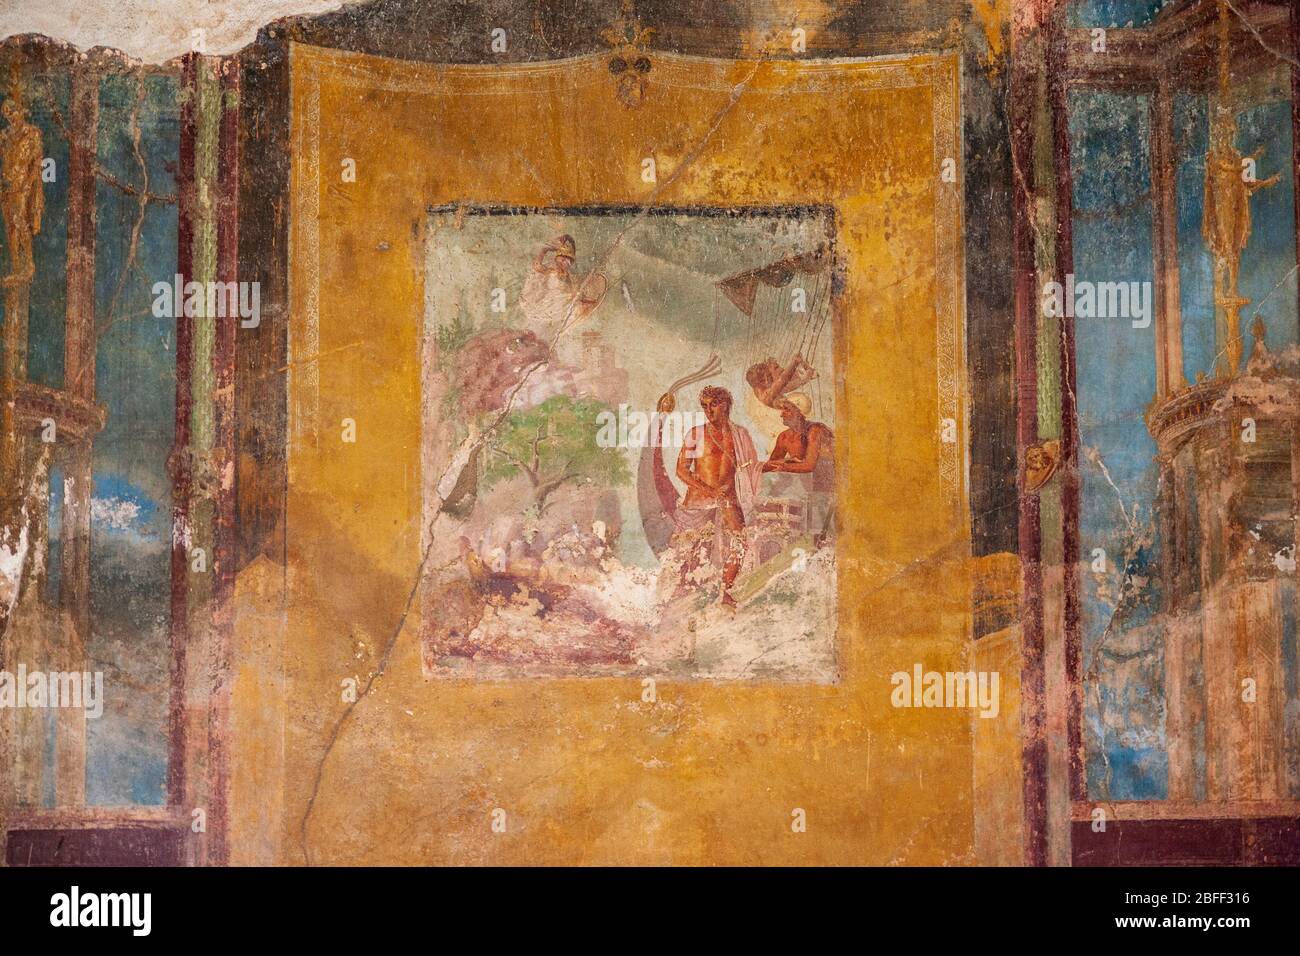 Dettaglio di un affresco murale raffigurante Teso e Ariadne nella sala da pranzo della Casa del tragico poeta, Pompei, Italia Foto Stock